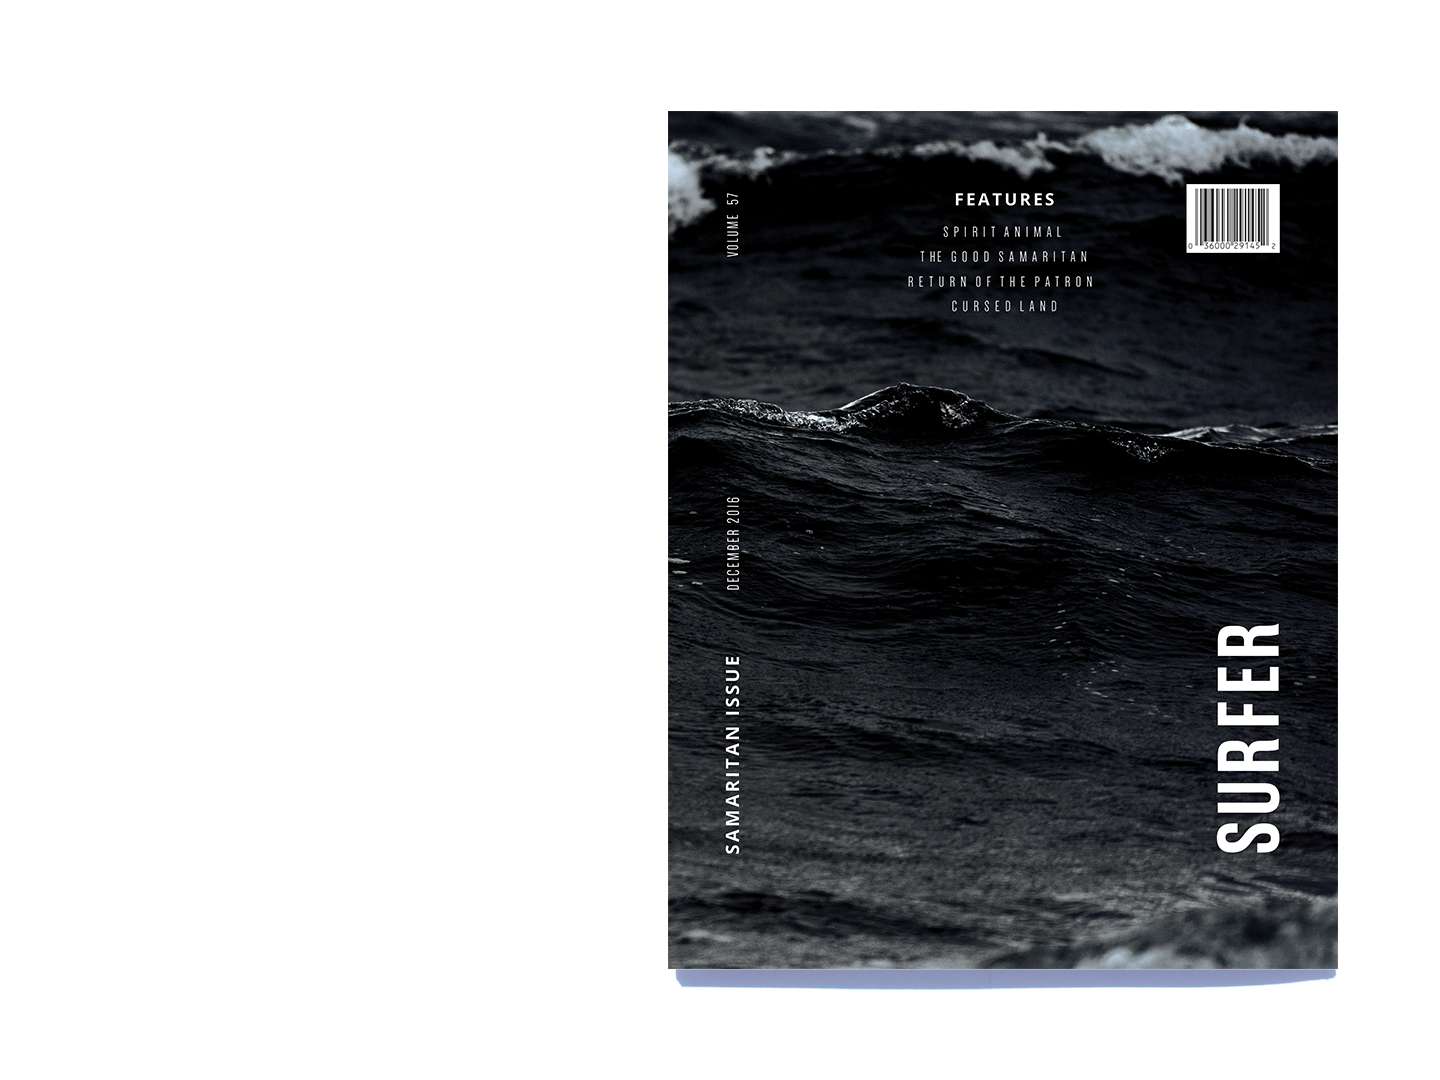 Surfer Magazine Redesign